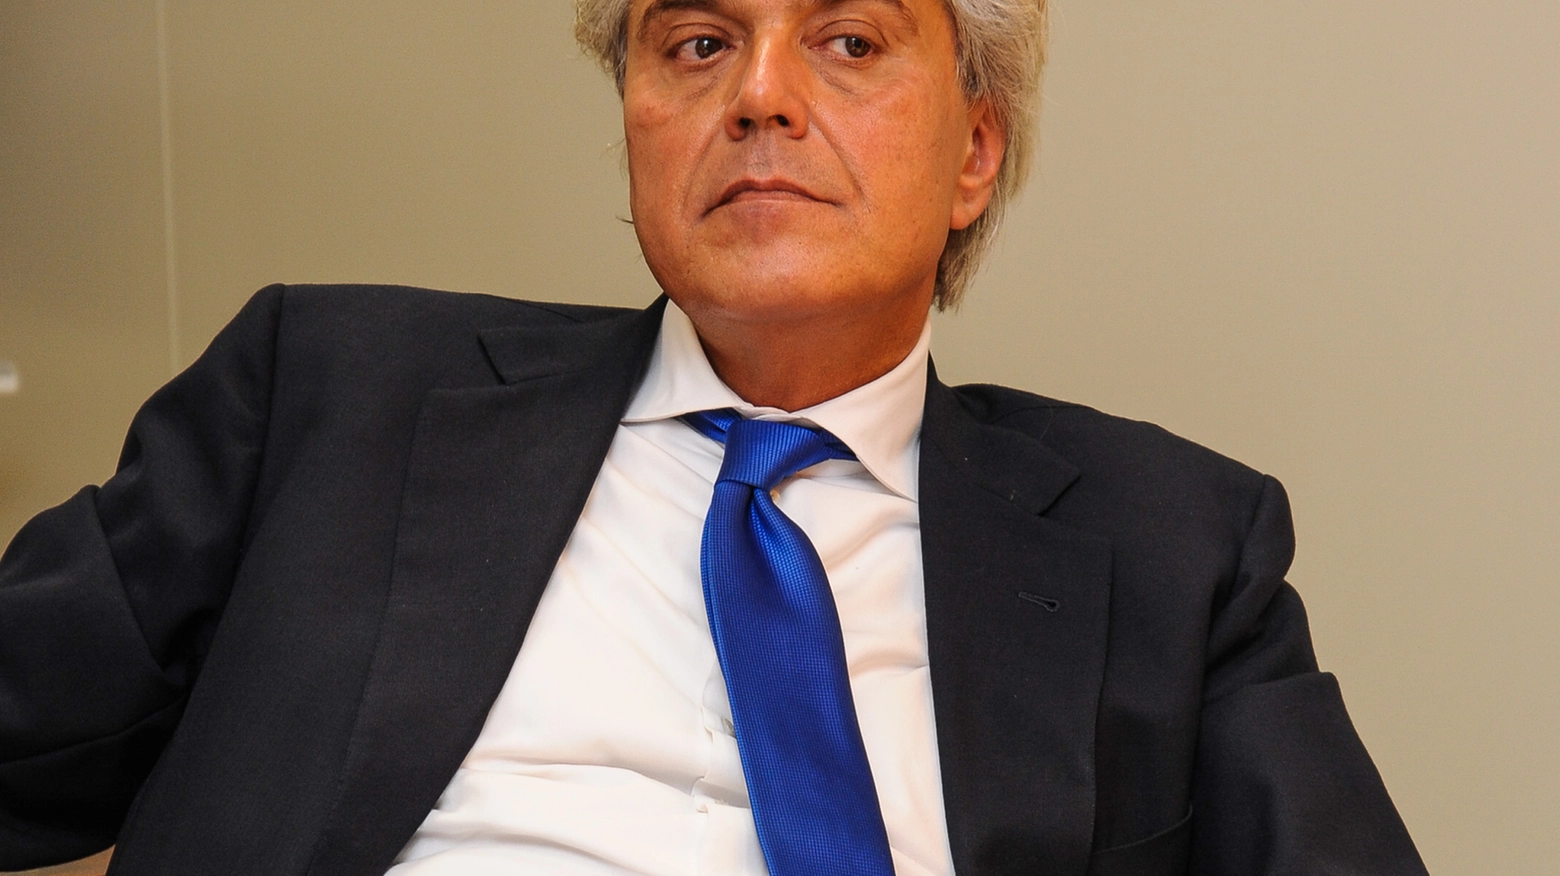 Luigi Marroni